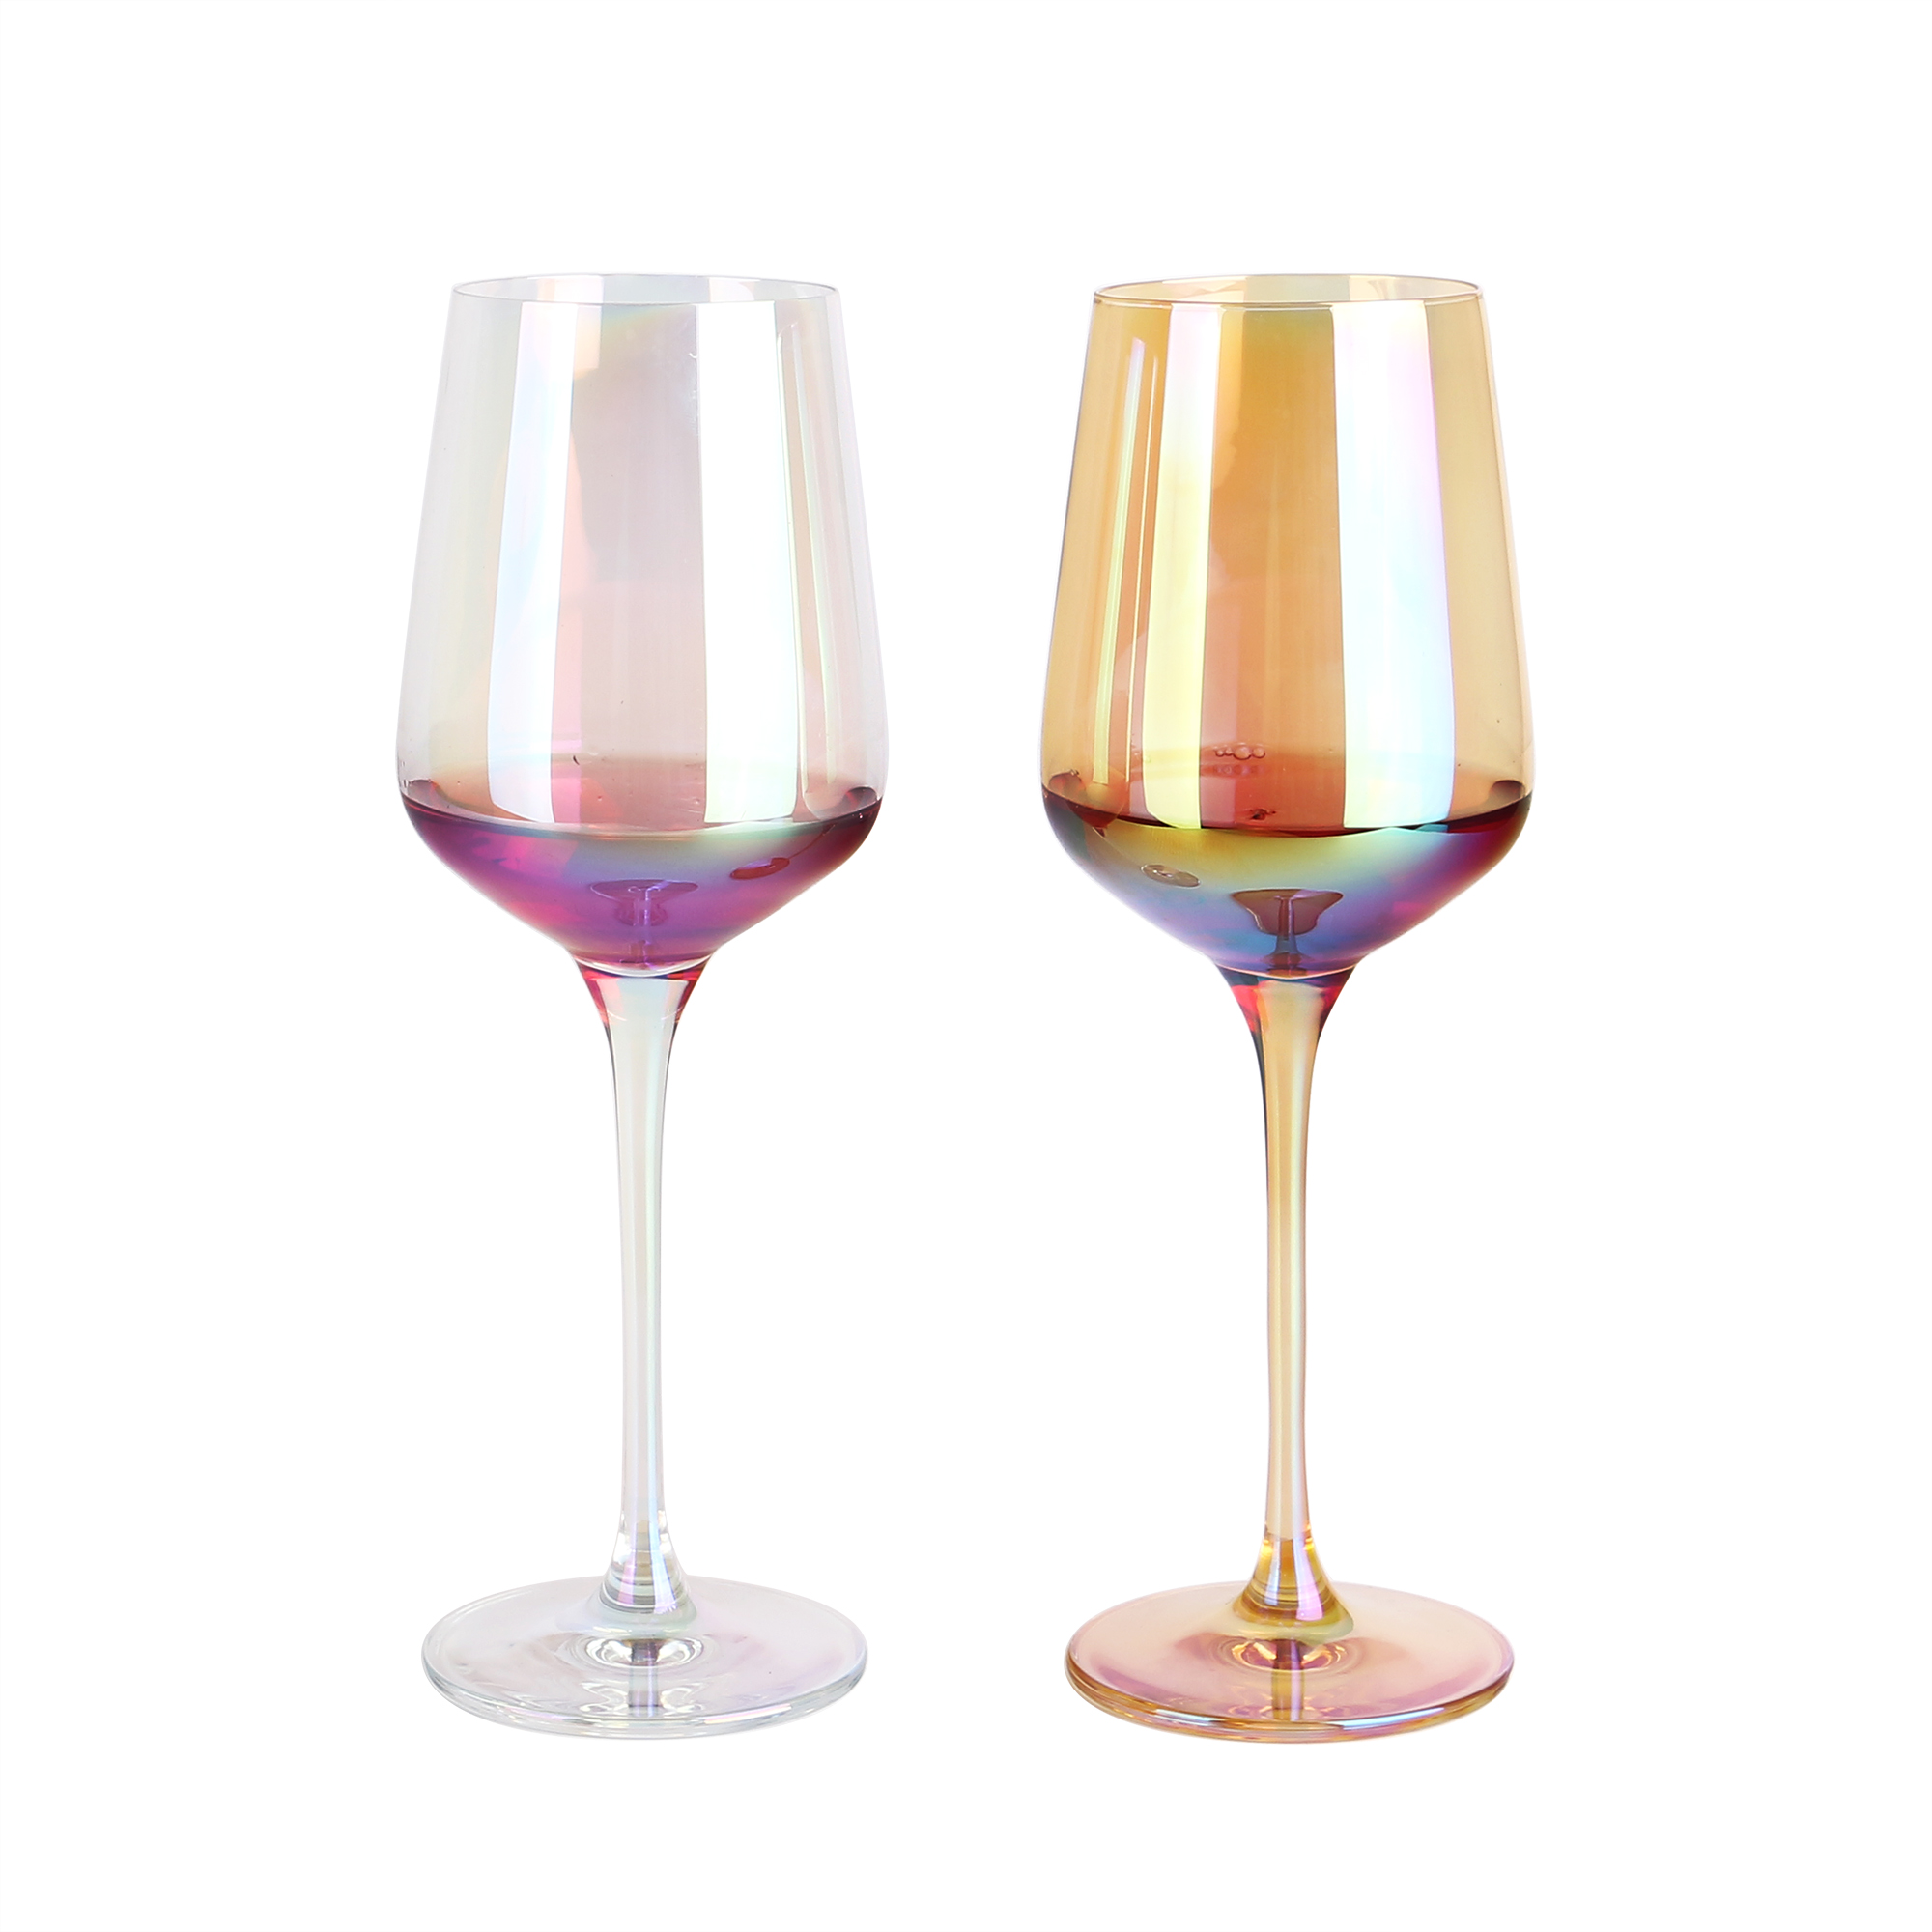 02 vidros de vinho coloridos por atacado